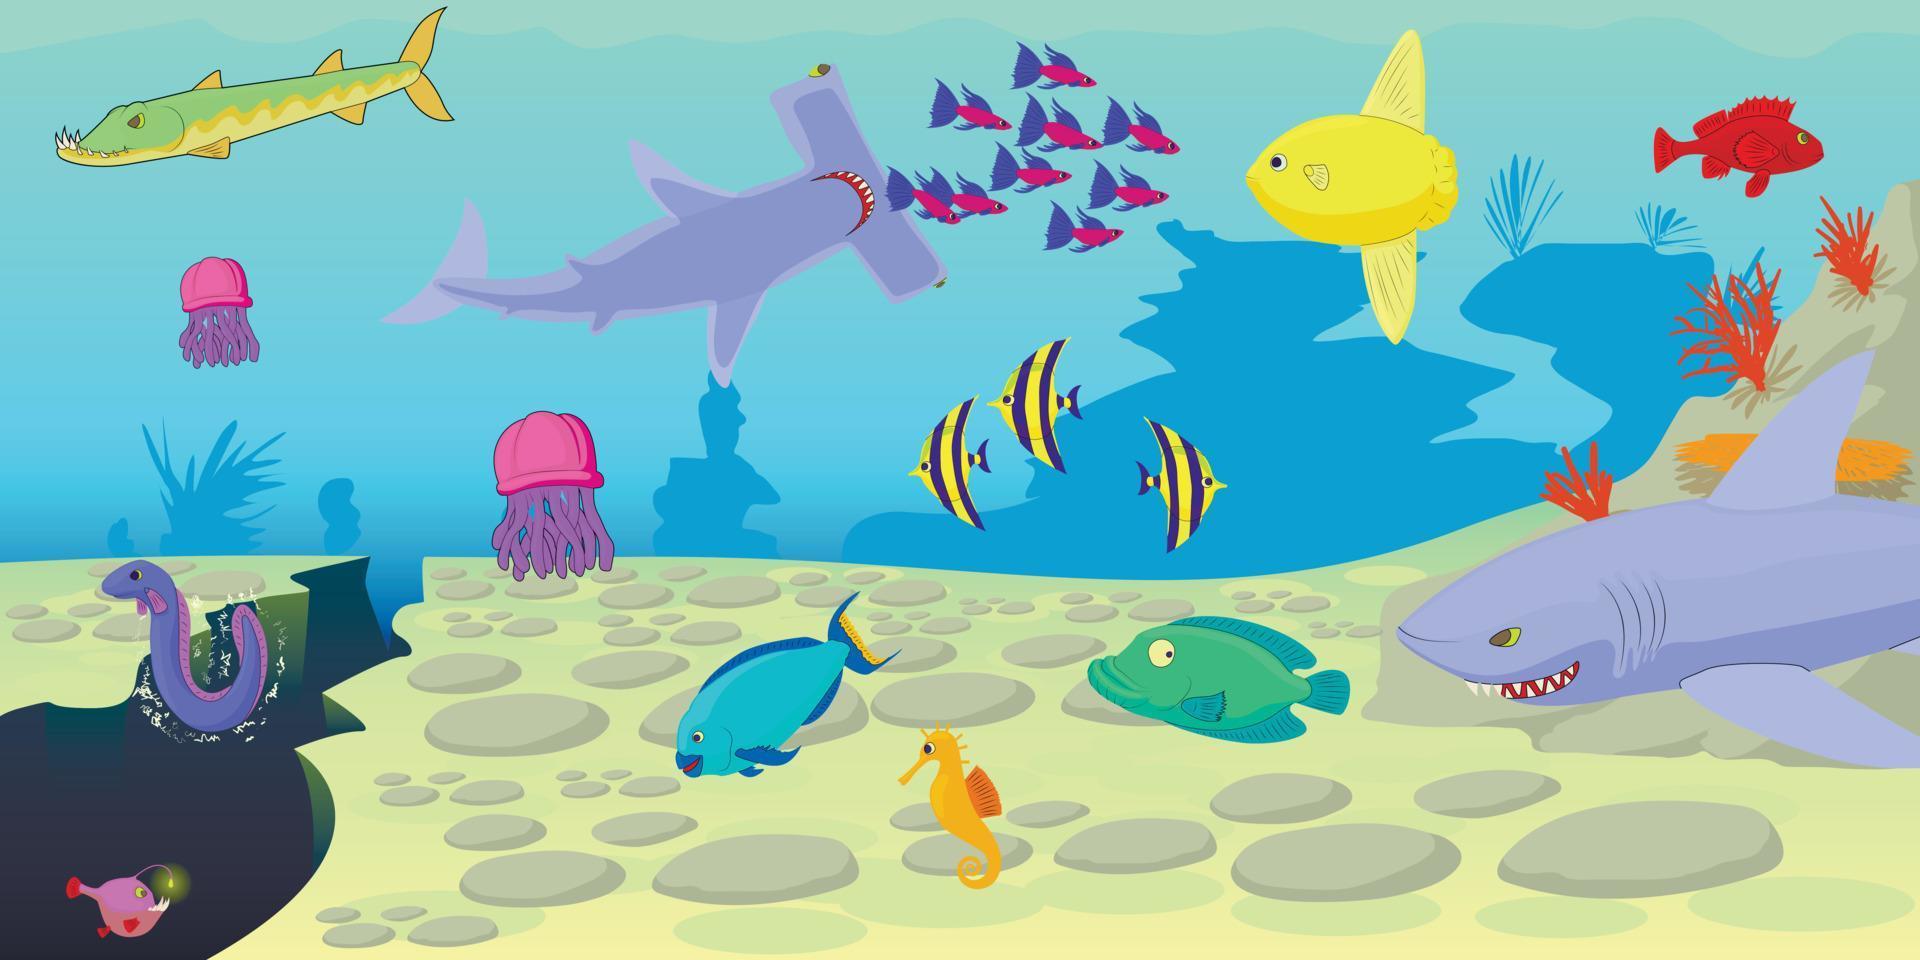 bannière horizontale de scène de poisson de mer, style cartoon vecteur